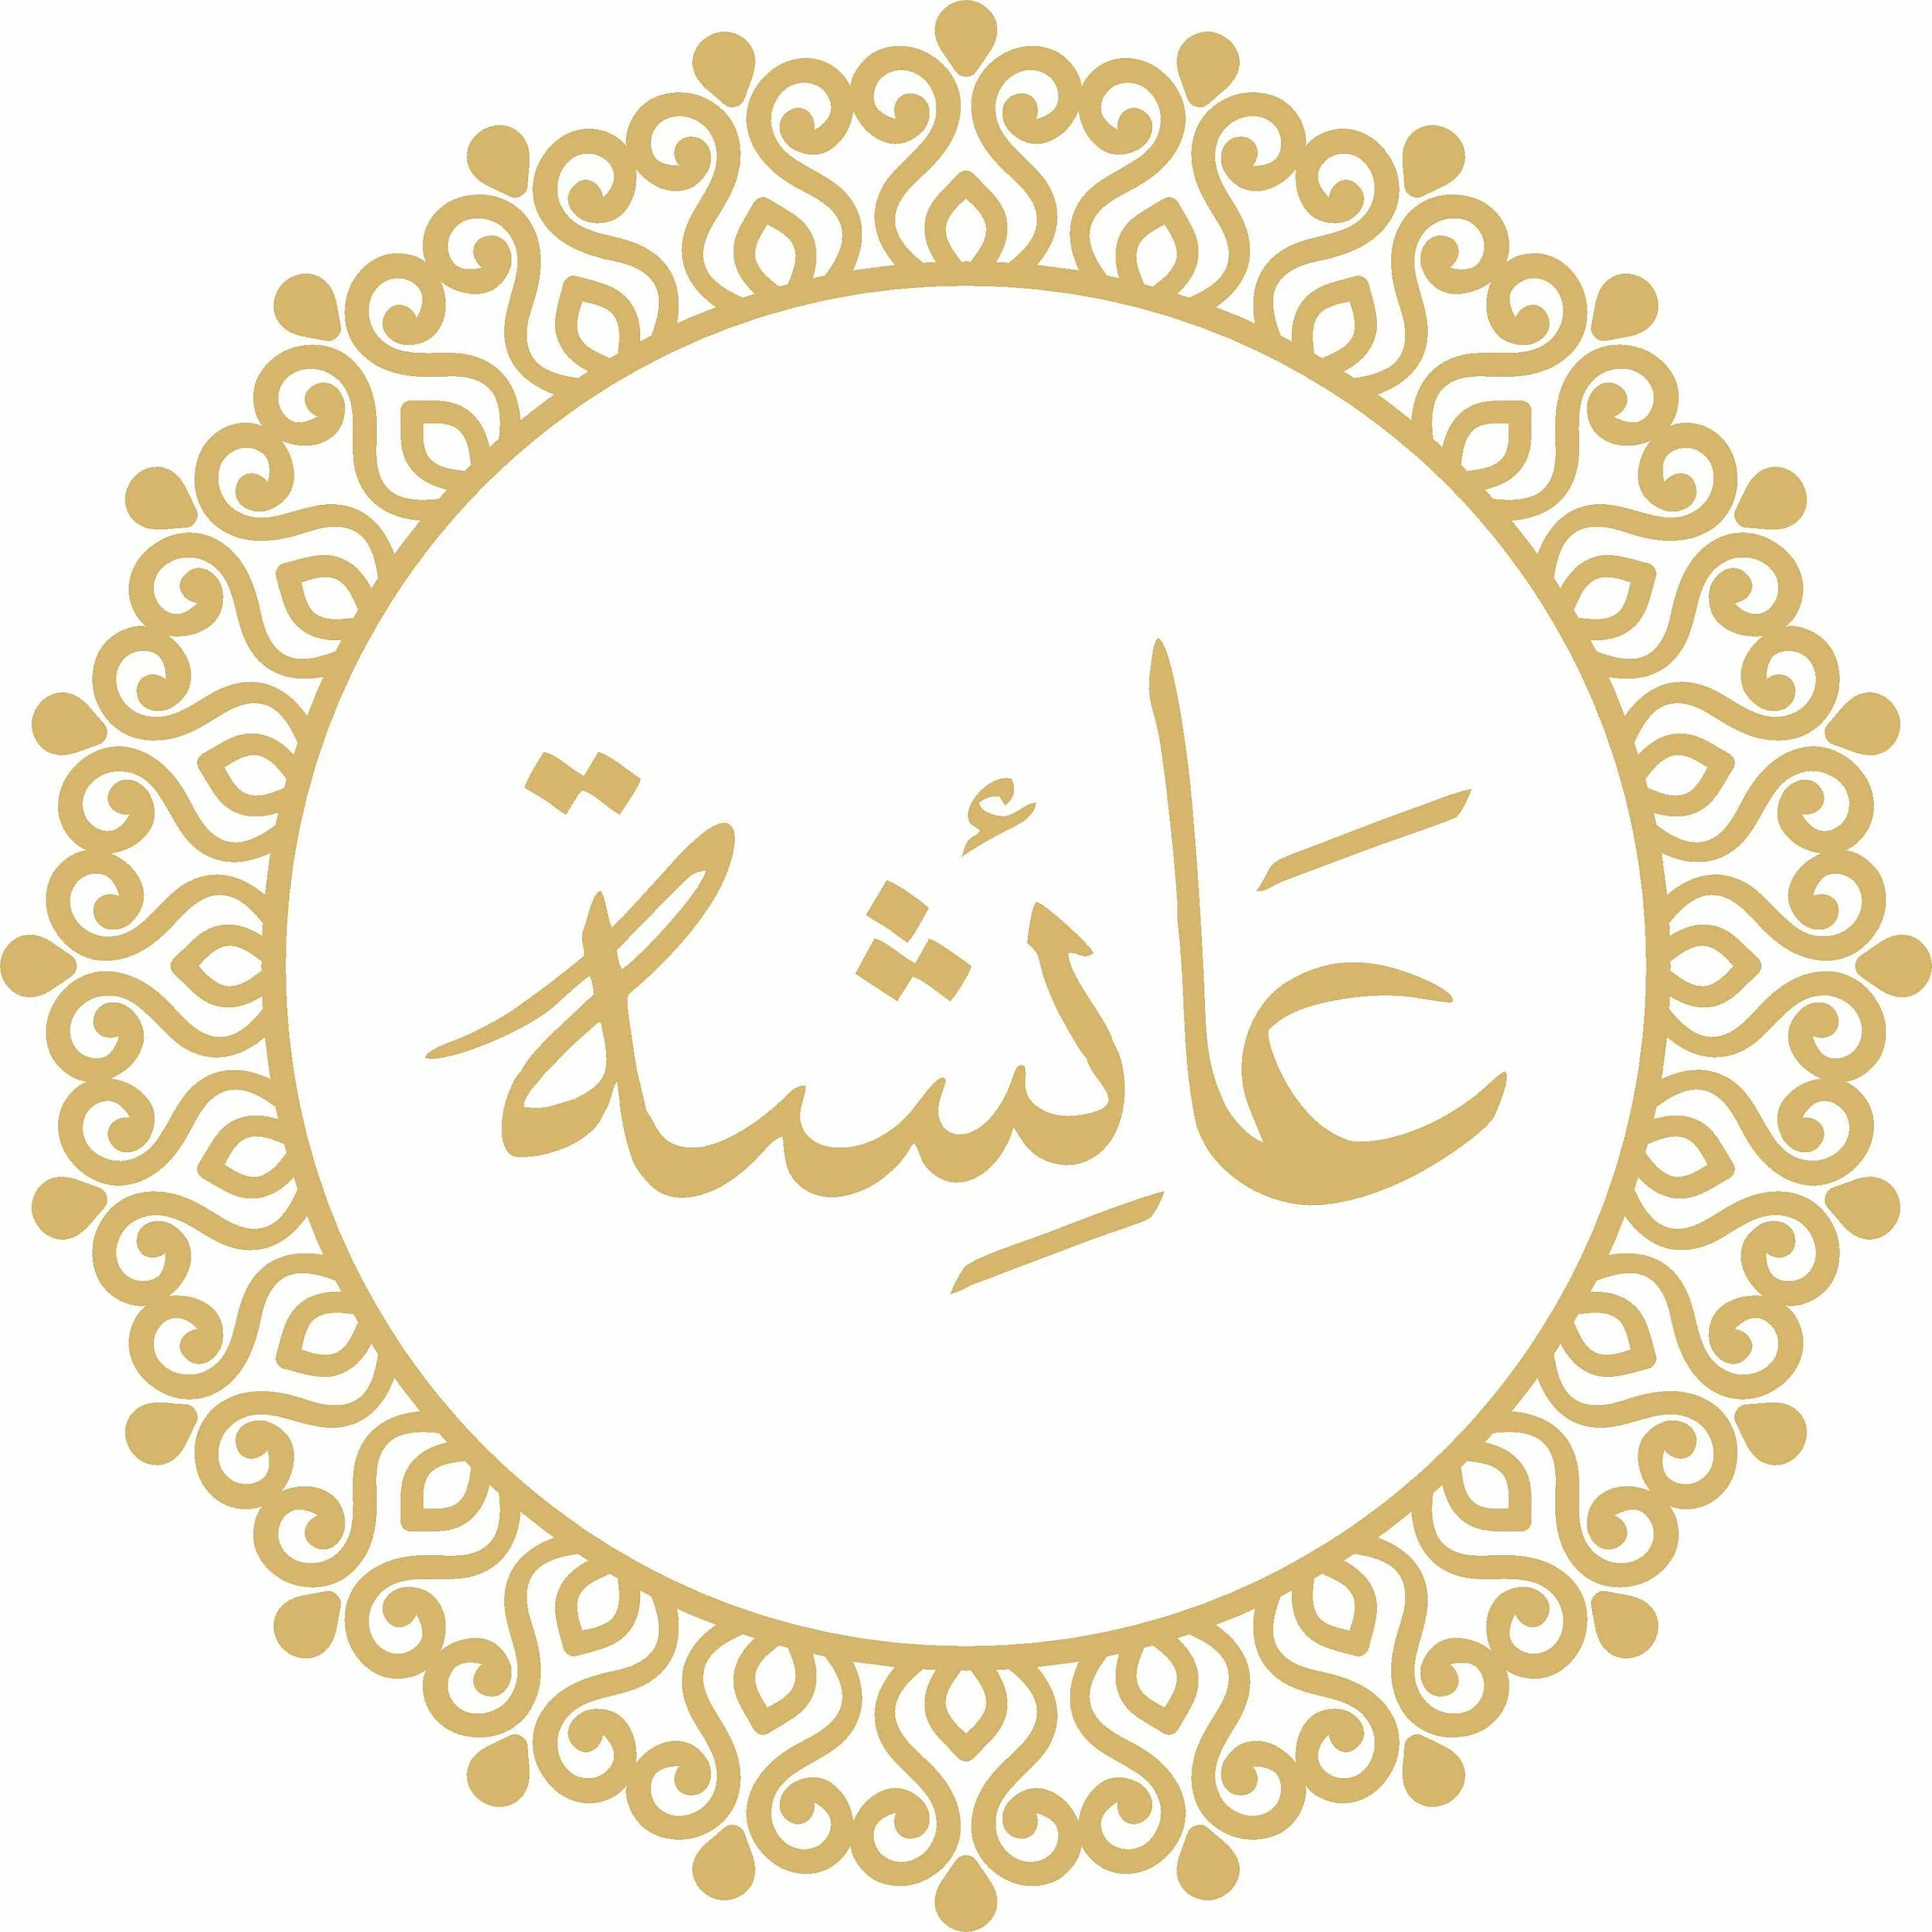 Имя Айша на арабском. Имя Аиша на арабском. Айша на арабском красиво. Круглое надписью на арабском.